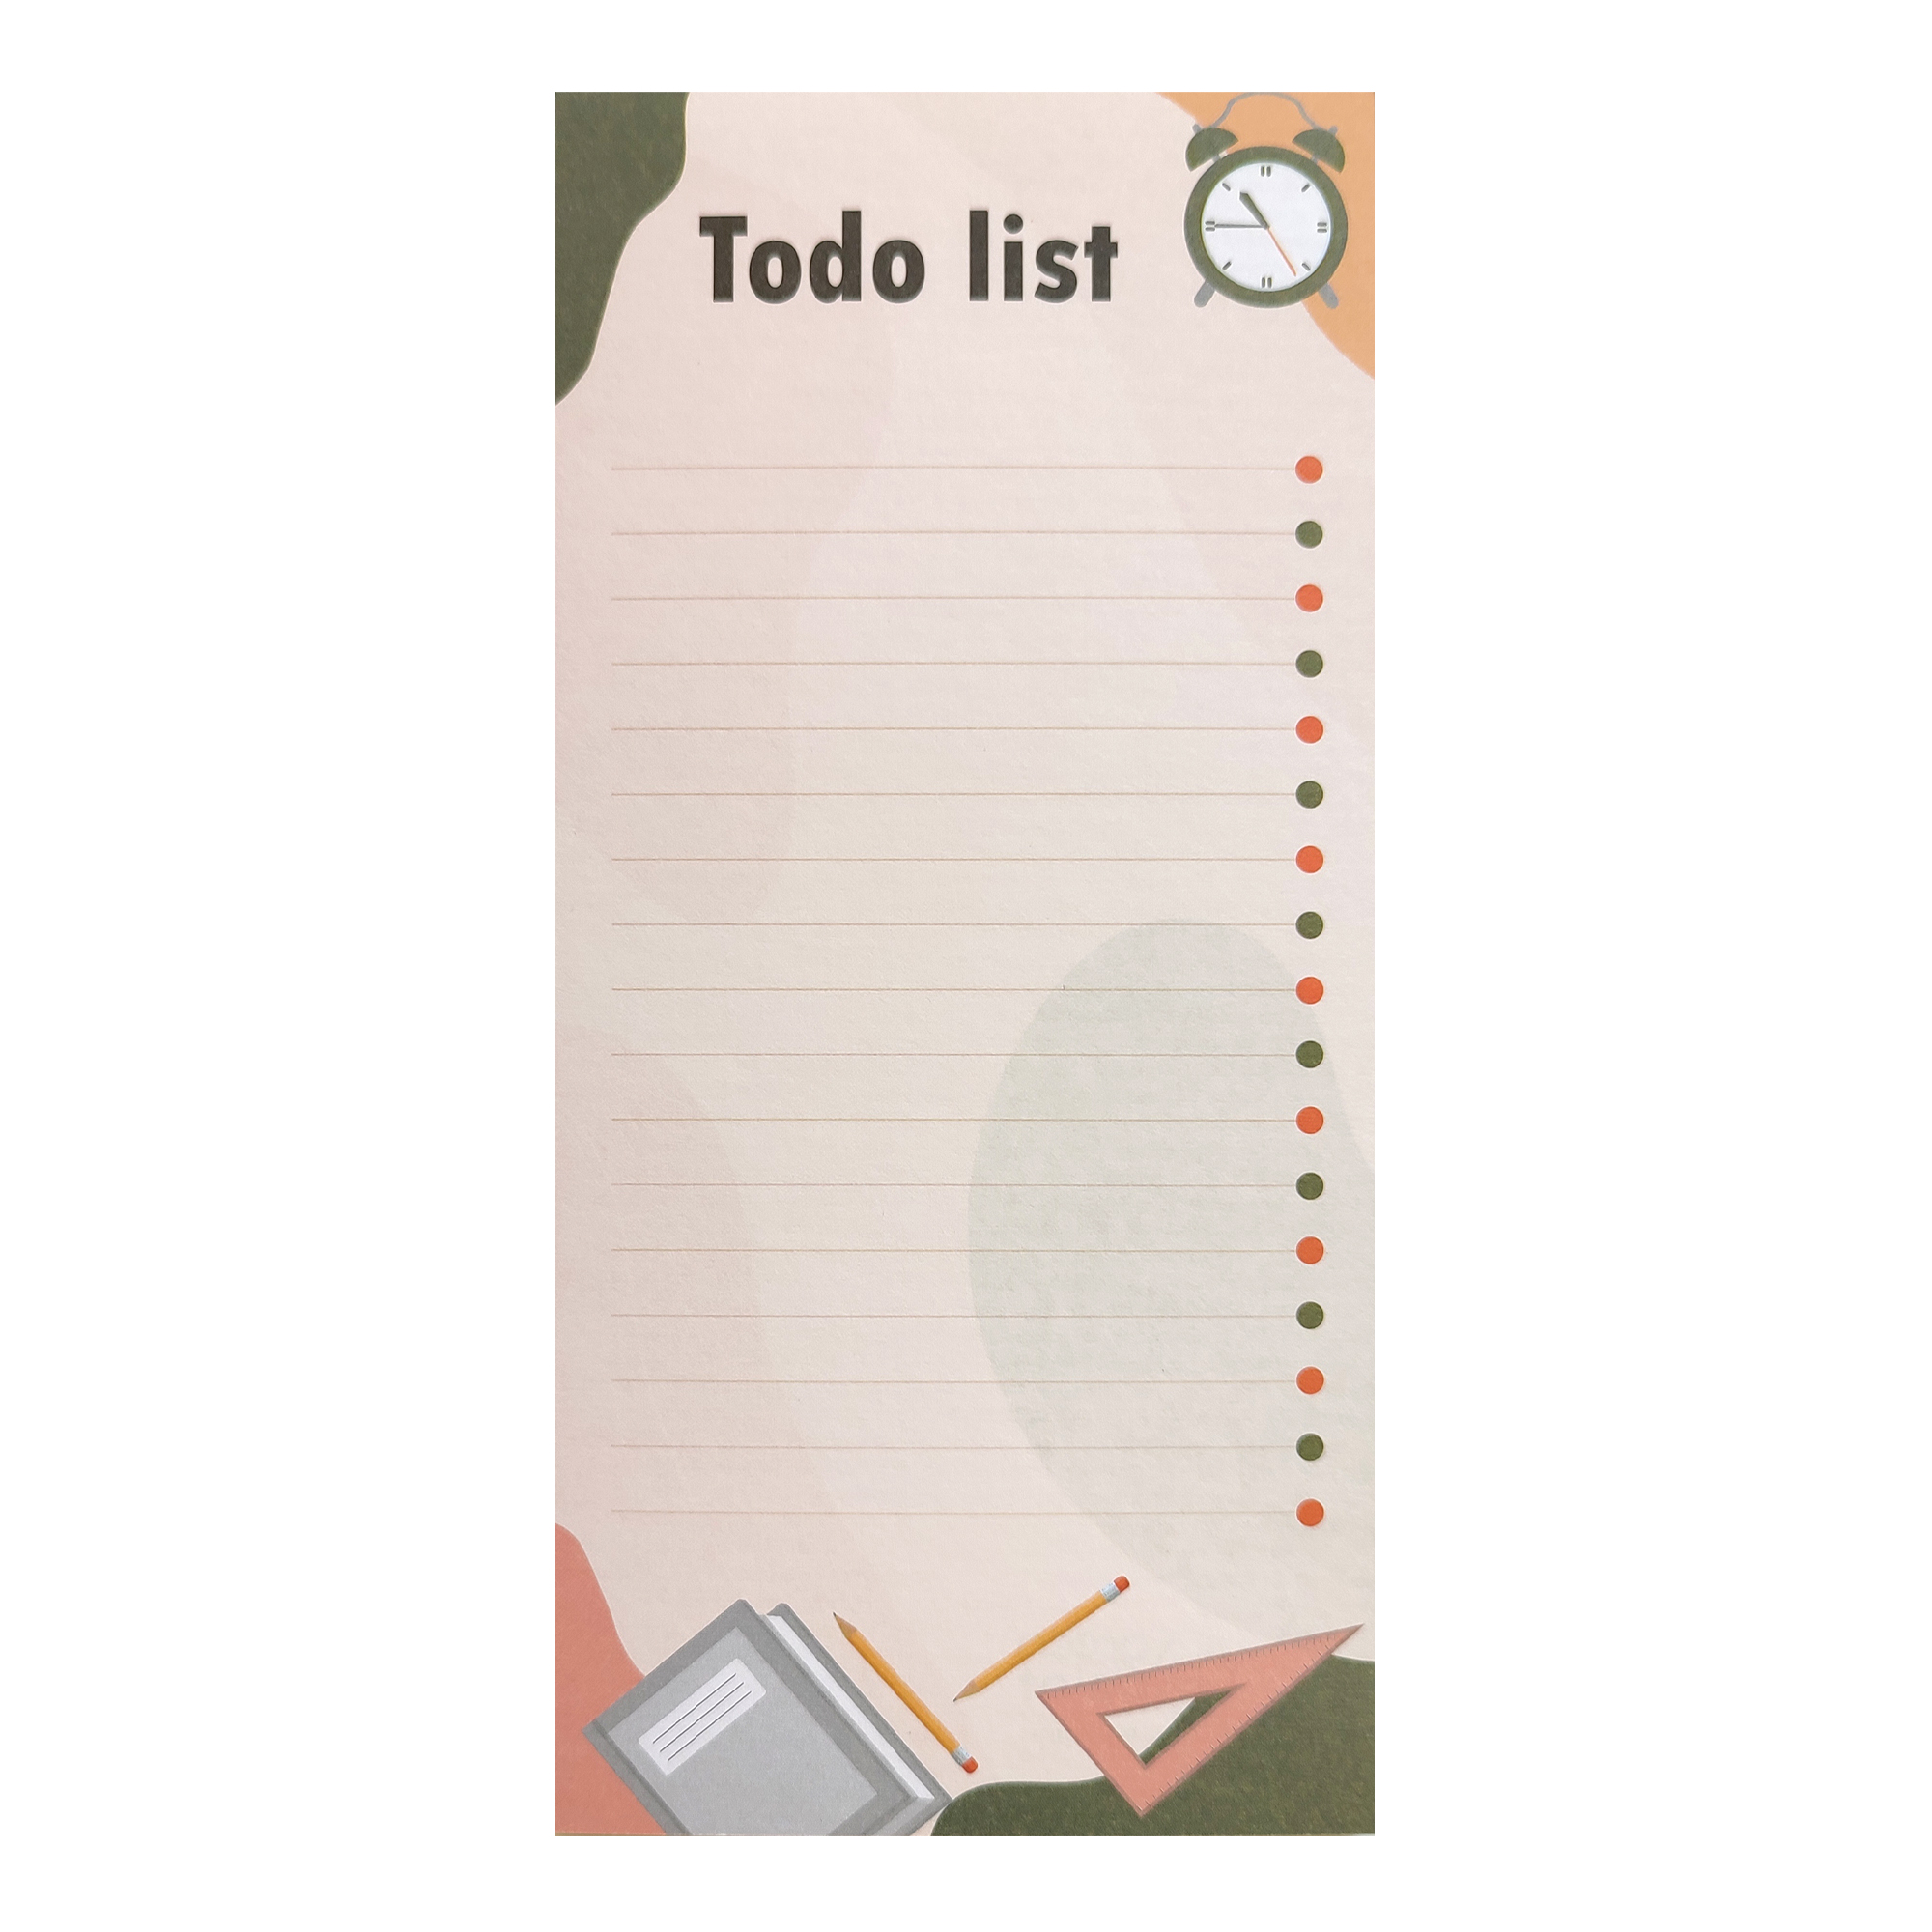 کاغذ یادداشت گرین پوینت طرح  لیست کارهای روزانه مدل مهندسی  کد ToDoListGP2012